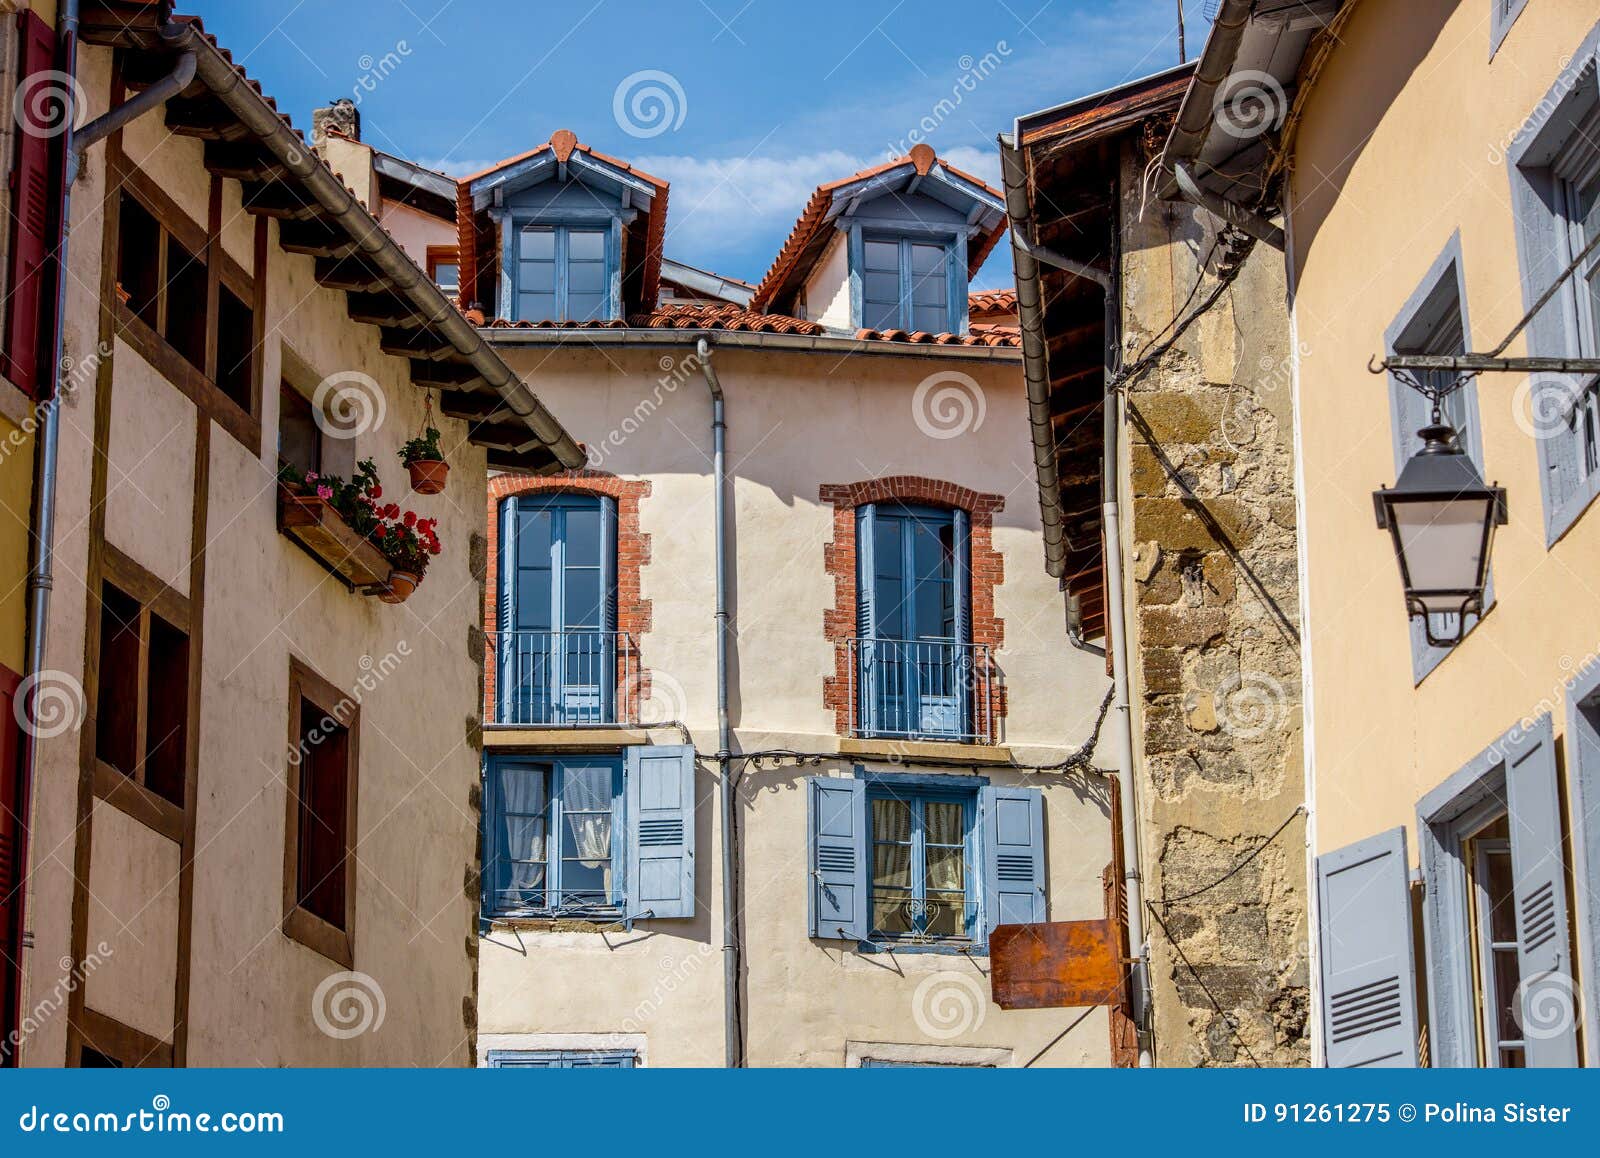 Descubrir 79+ imagen casas tipicas francesas